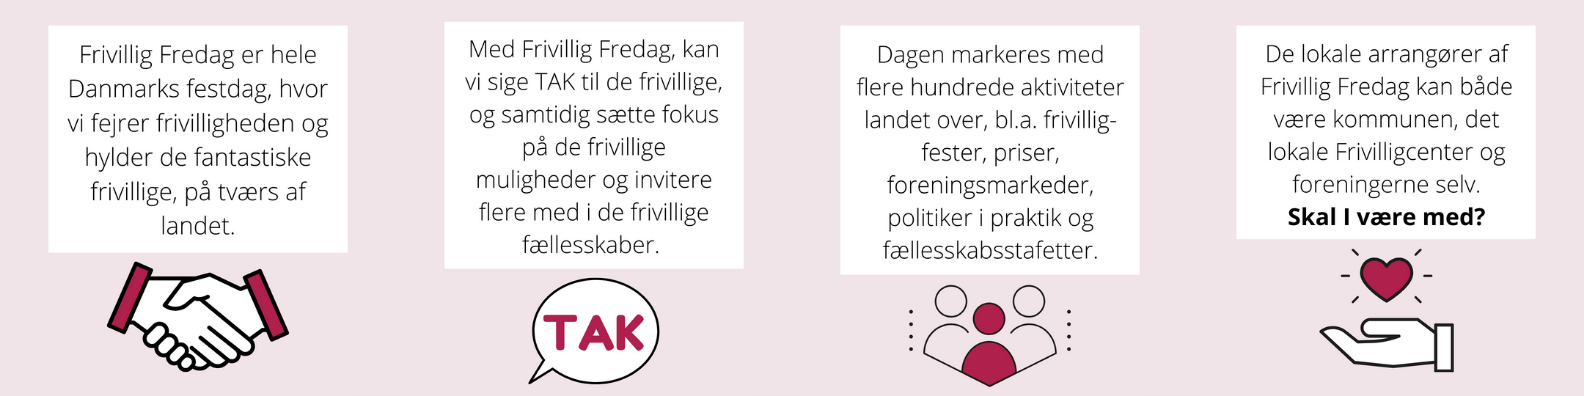 Hvad er Frivillig Fredag? Infografik med tak fra https://www.frivilligfredag.dk/om-frivillig-fredag/